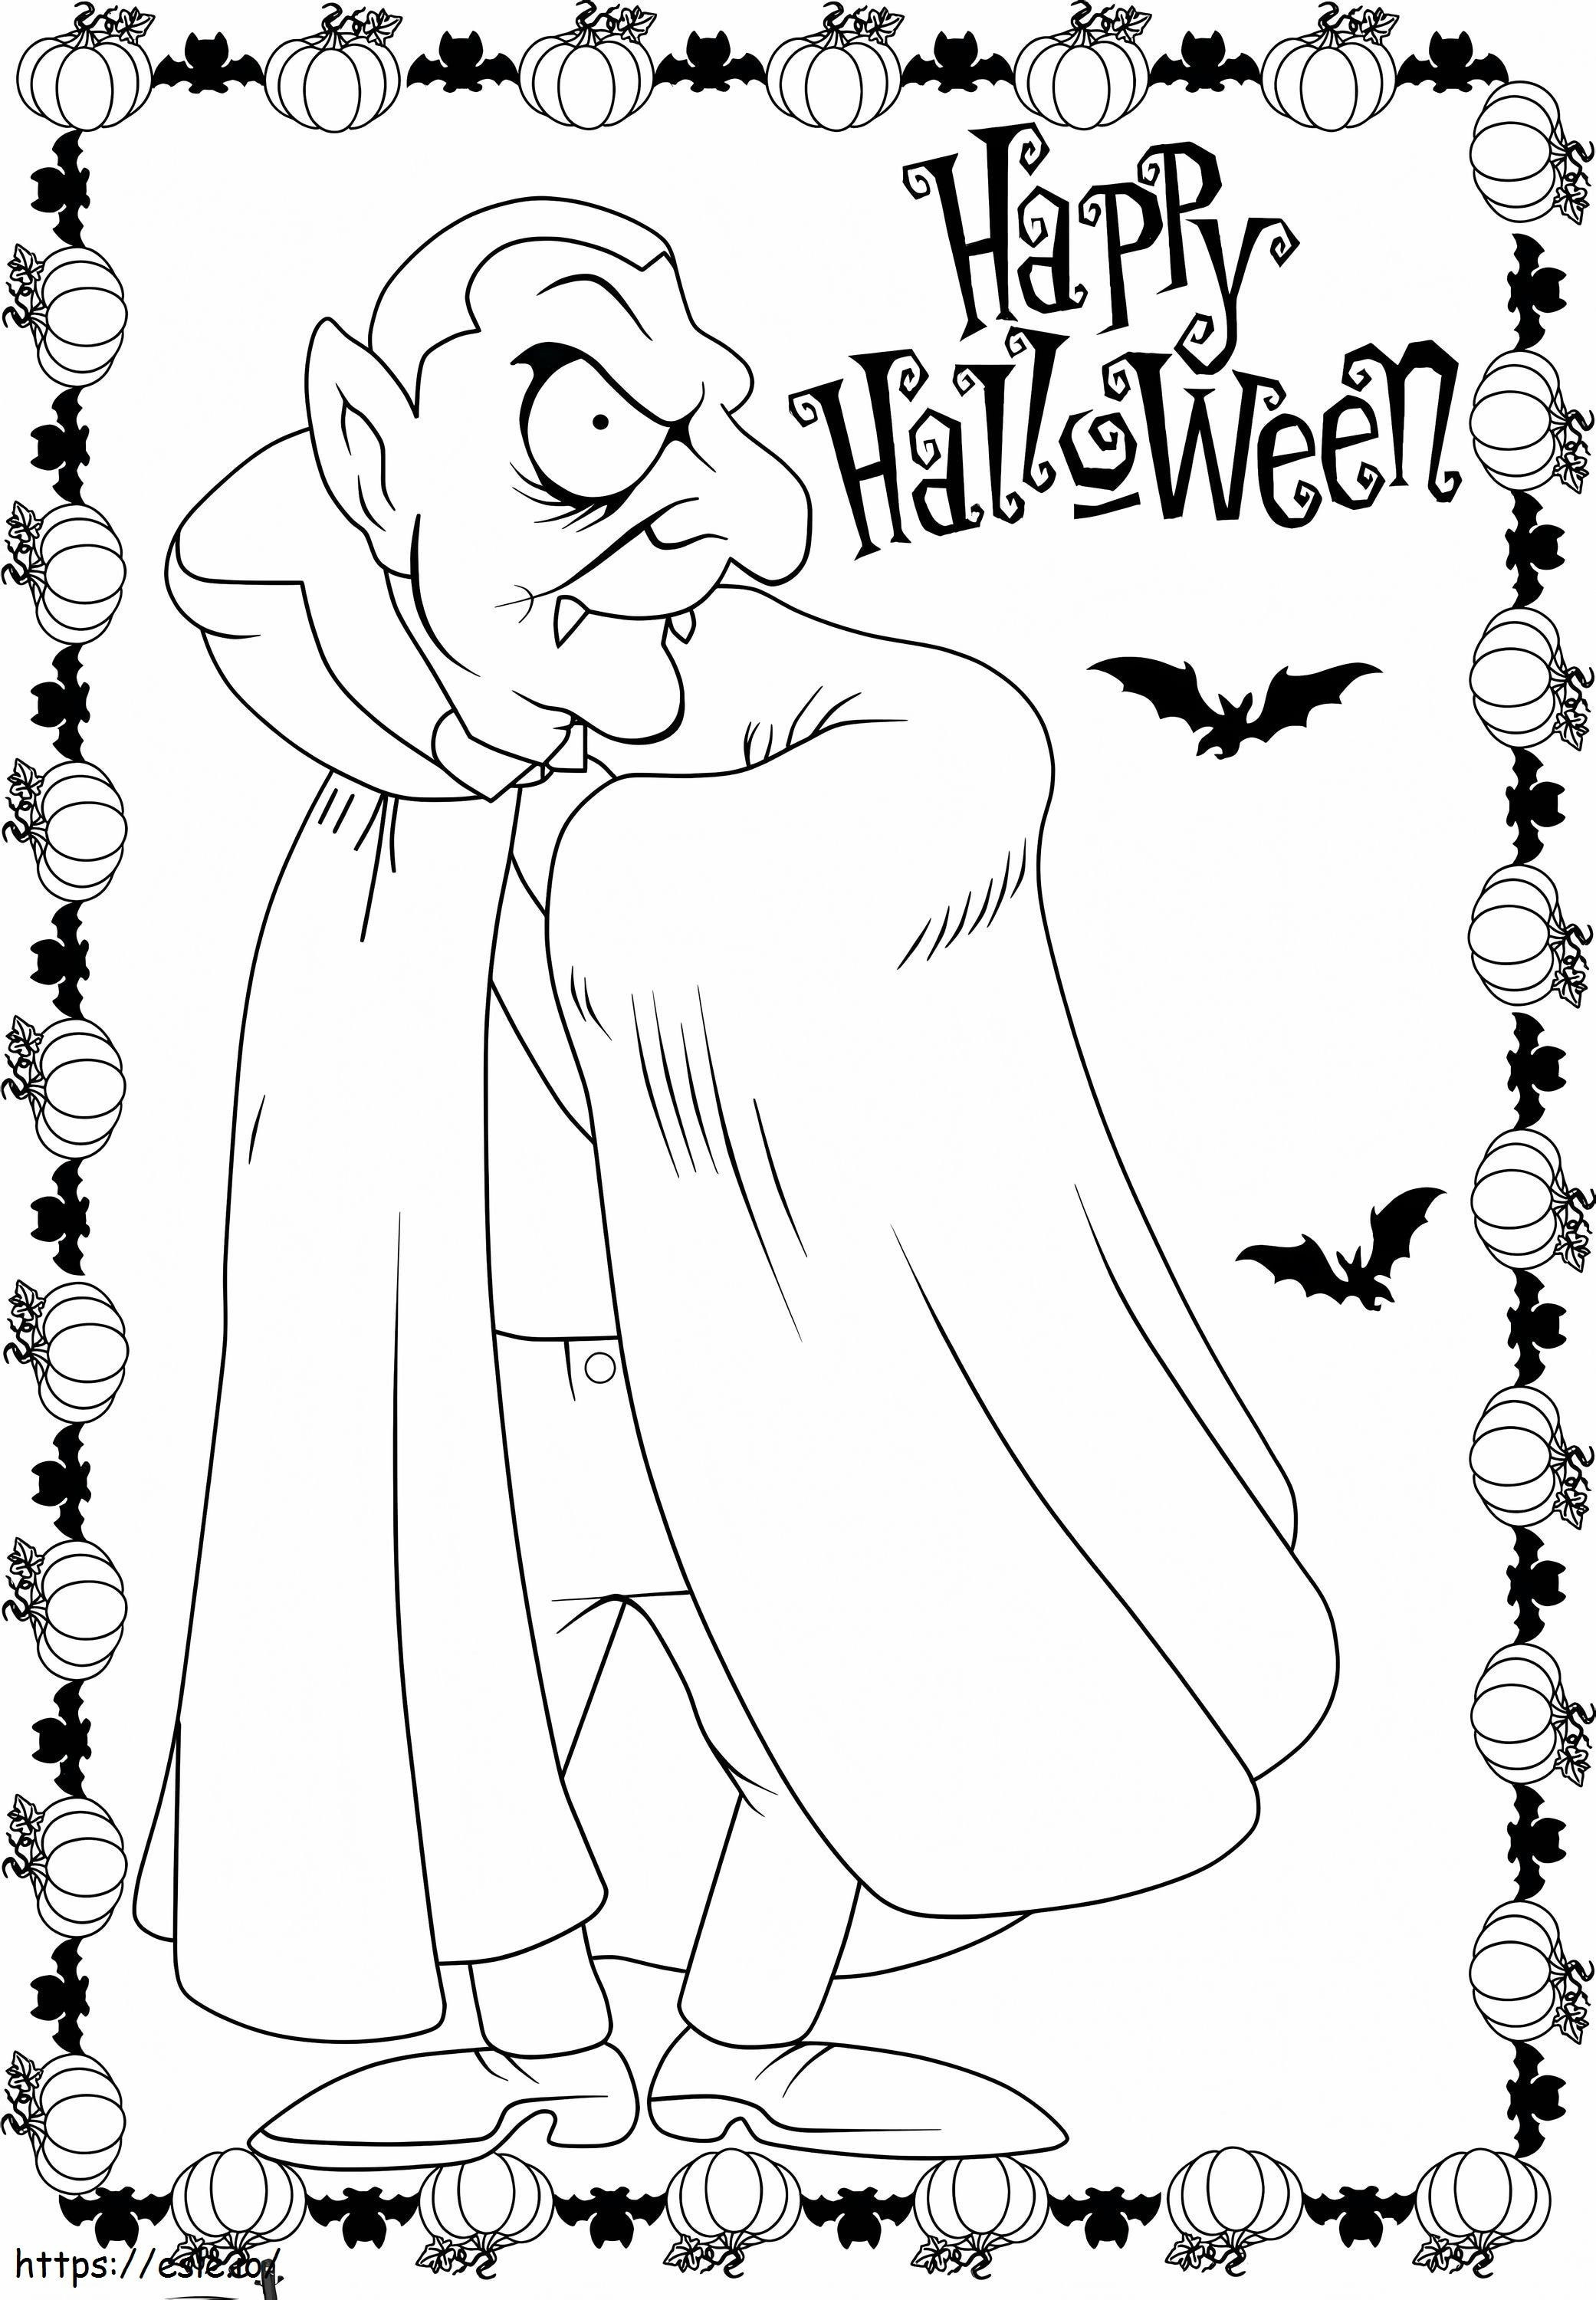 Cartoon Dracula coloring page